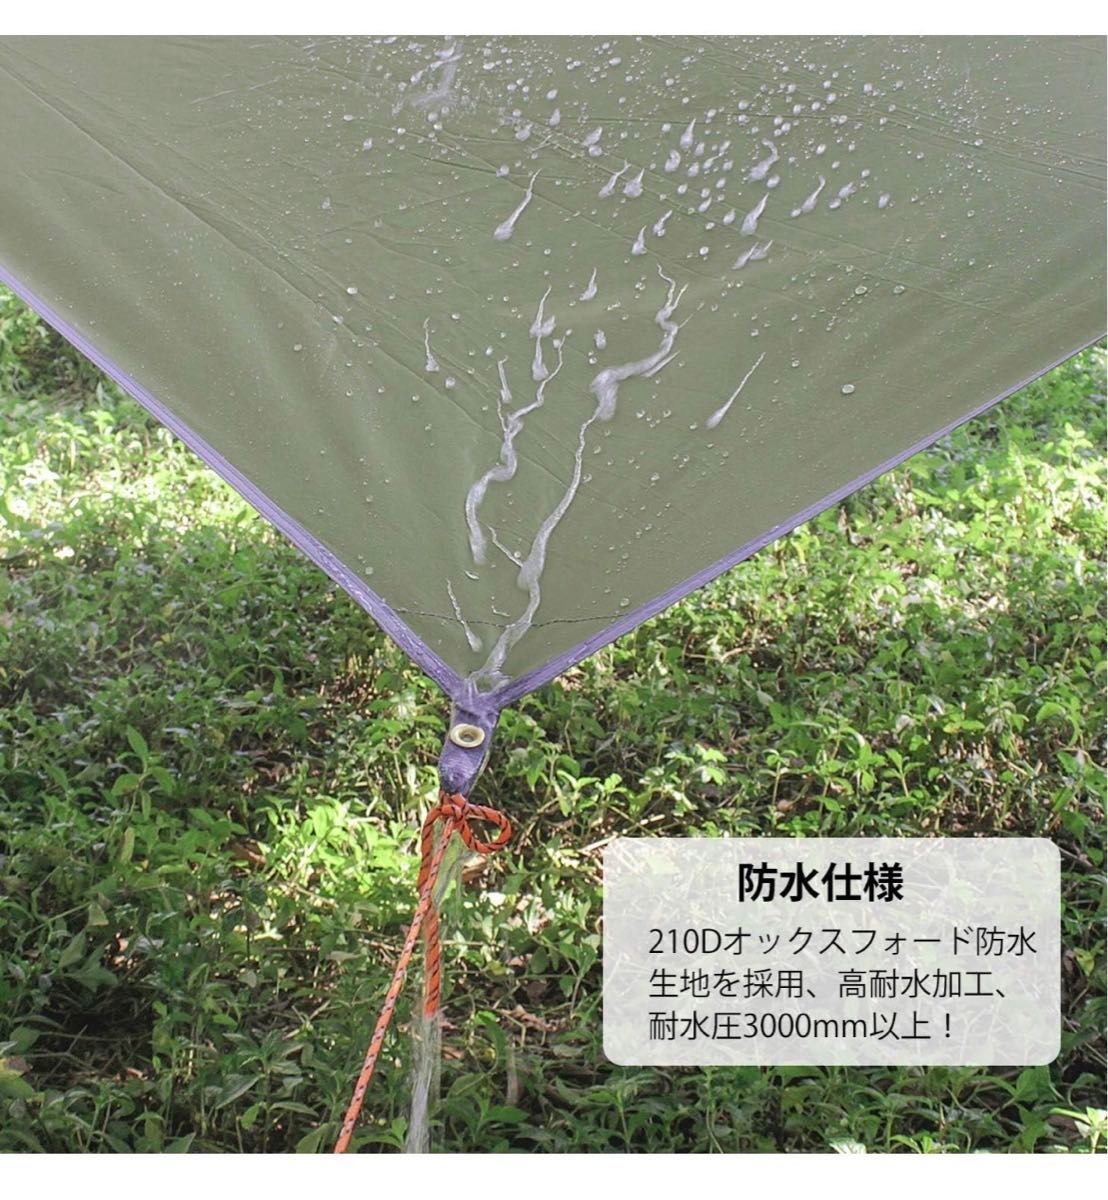 【新品一点限り】Unigear 防水タープ キャンプ タープ テント